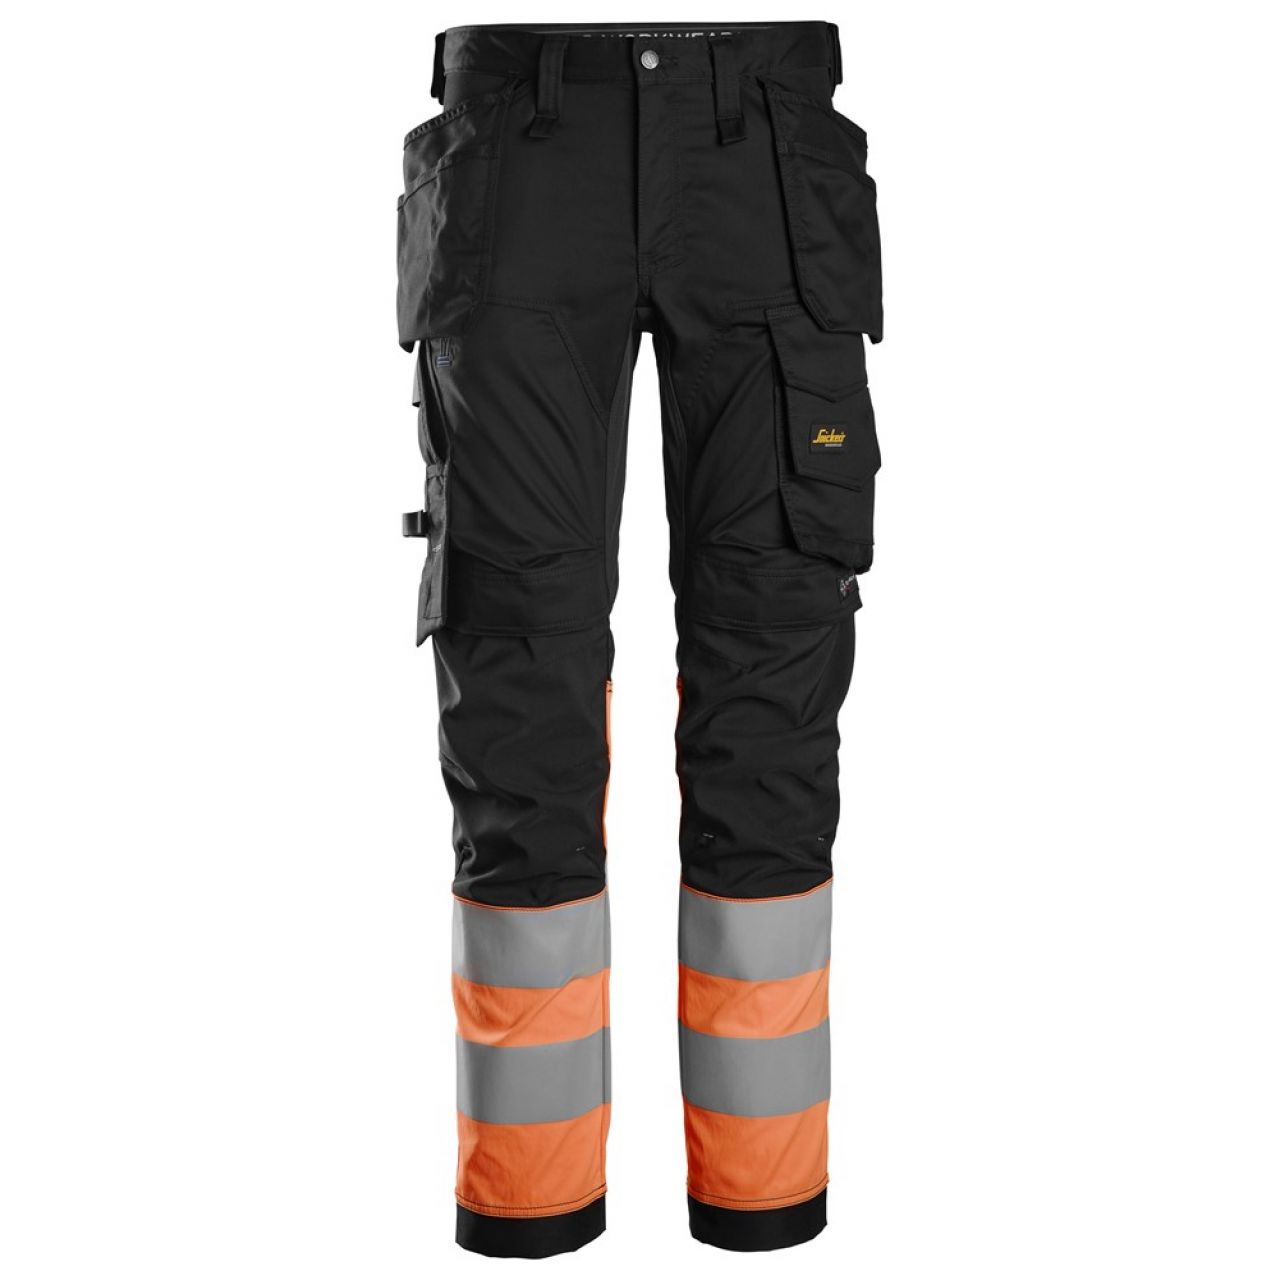 6234 Pantalones largos de trabajo elásticos de alta visibilidad clase 1 con bolsillos flotantes negro-naranja talla 54